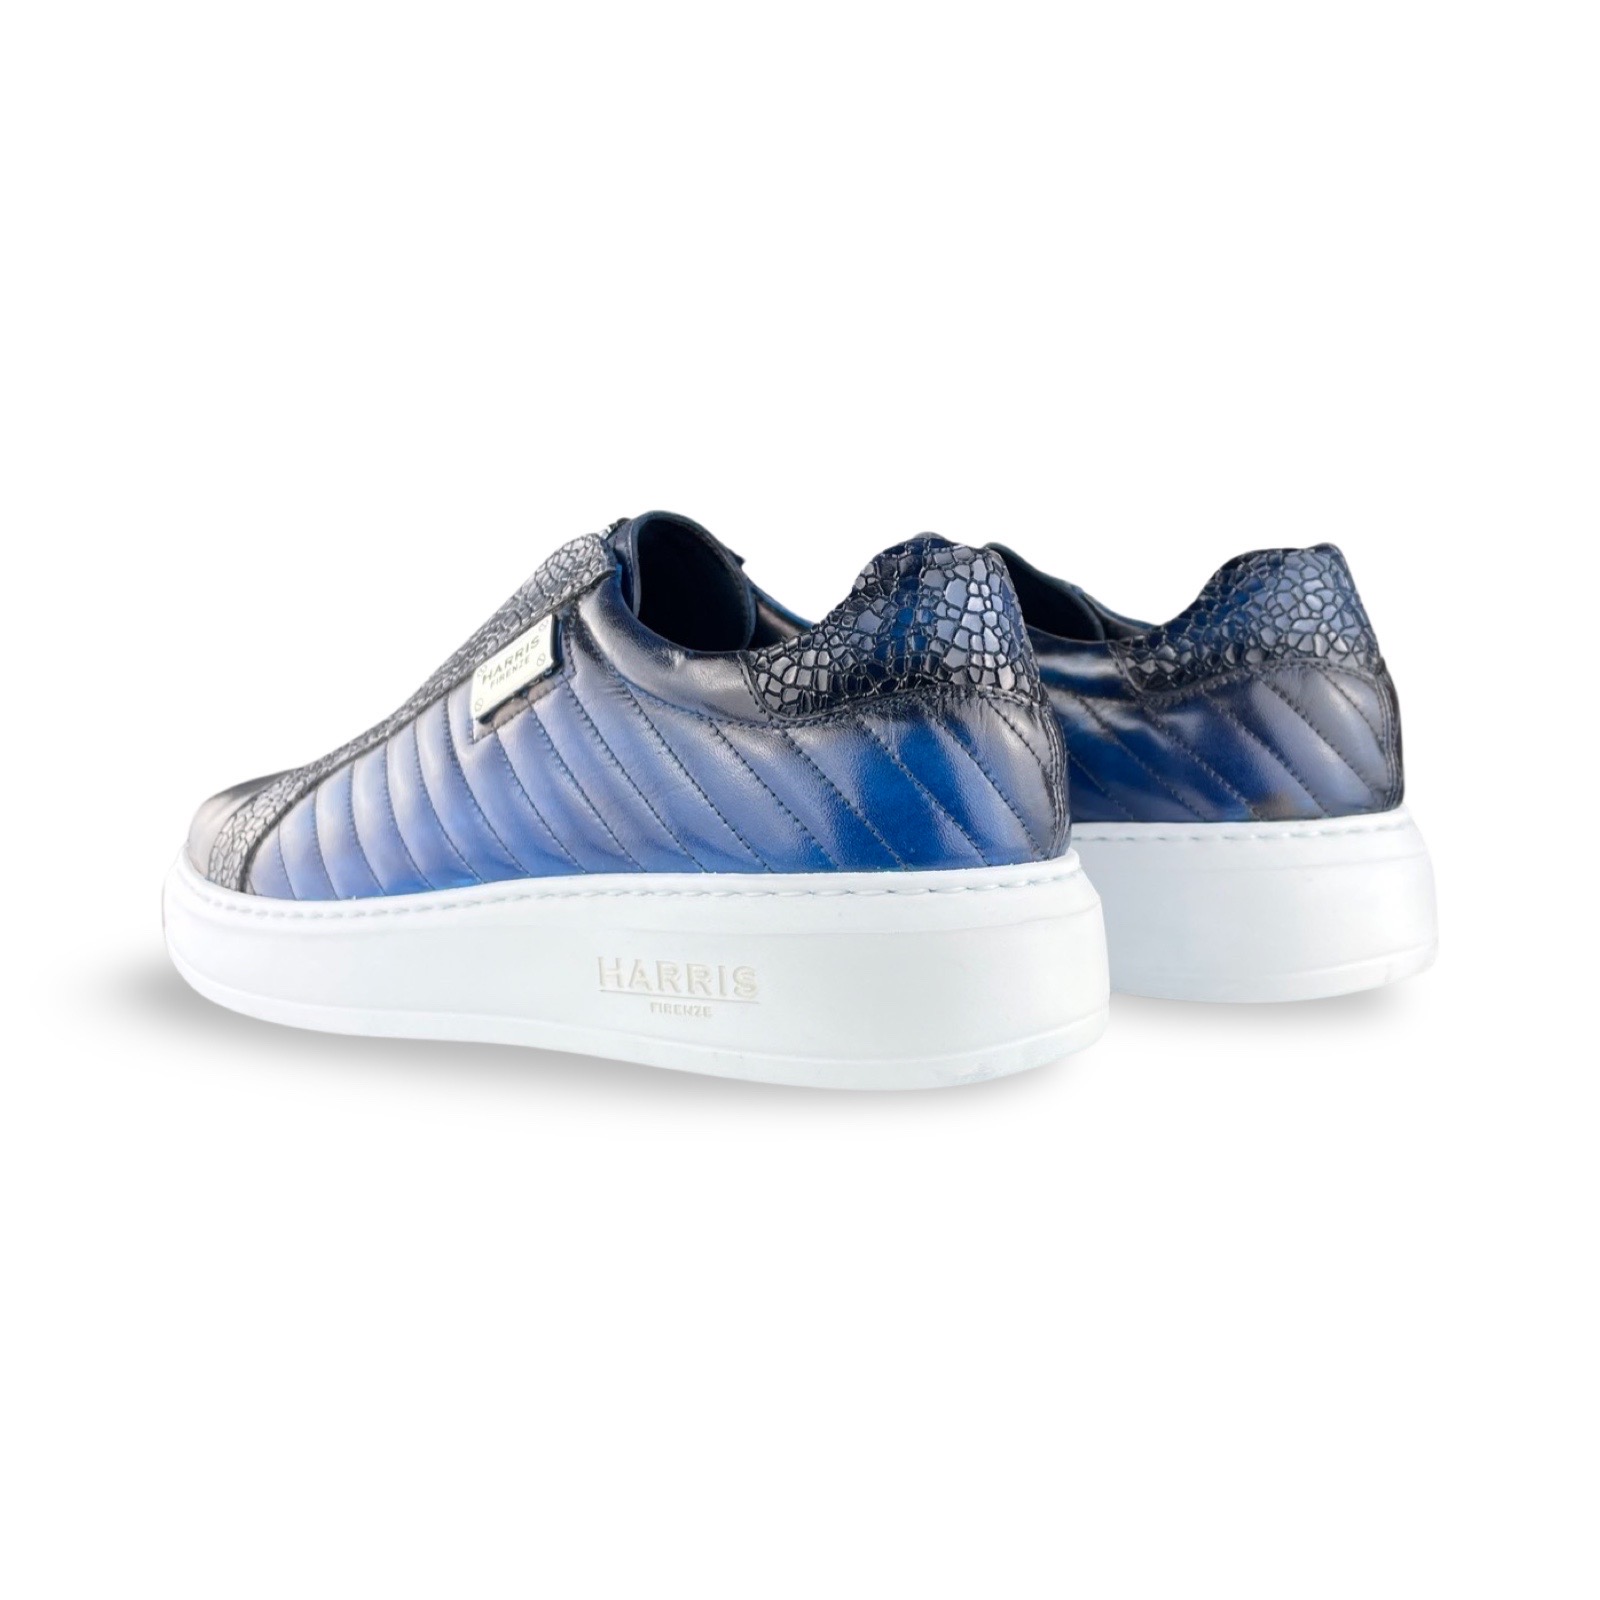 Harris Sneaker Majorca Azzurro